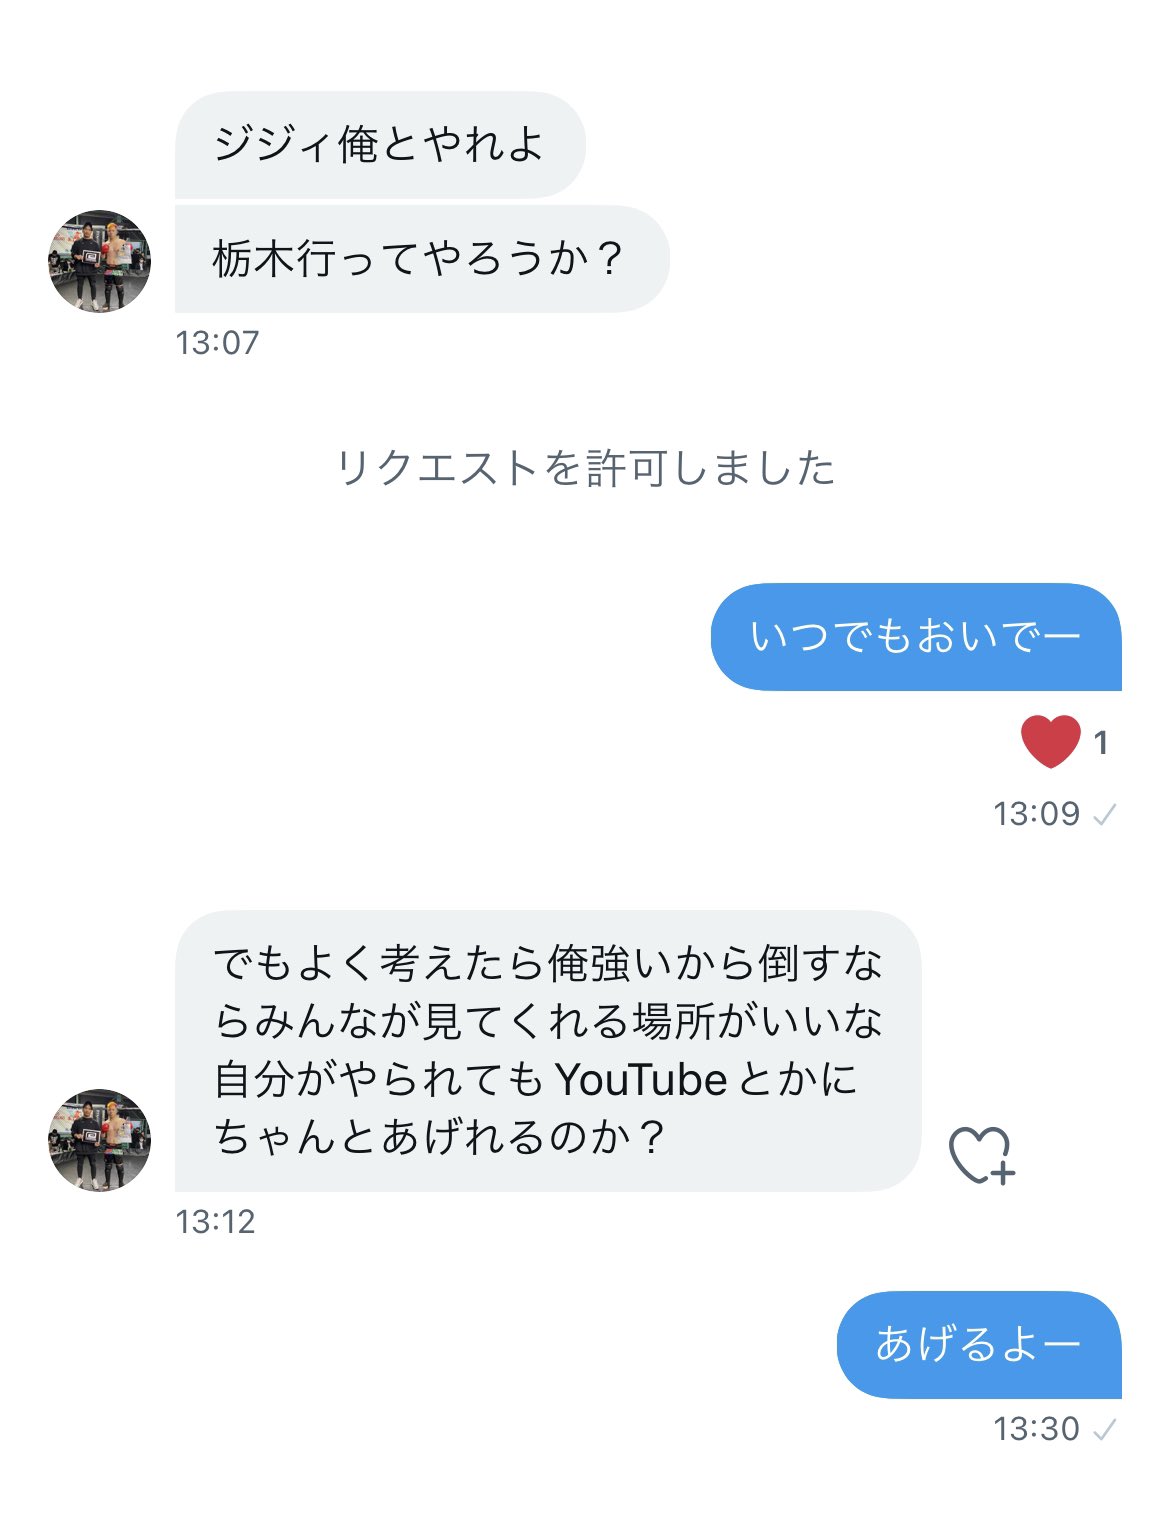 啓之輔 keinosuke on Twitter: 